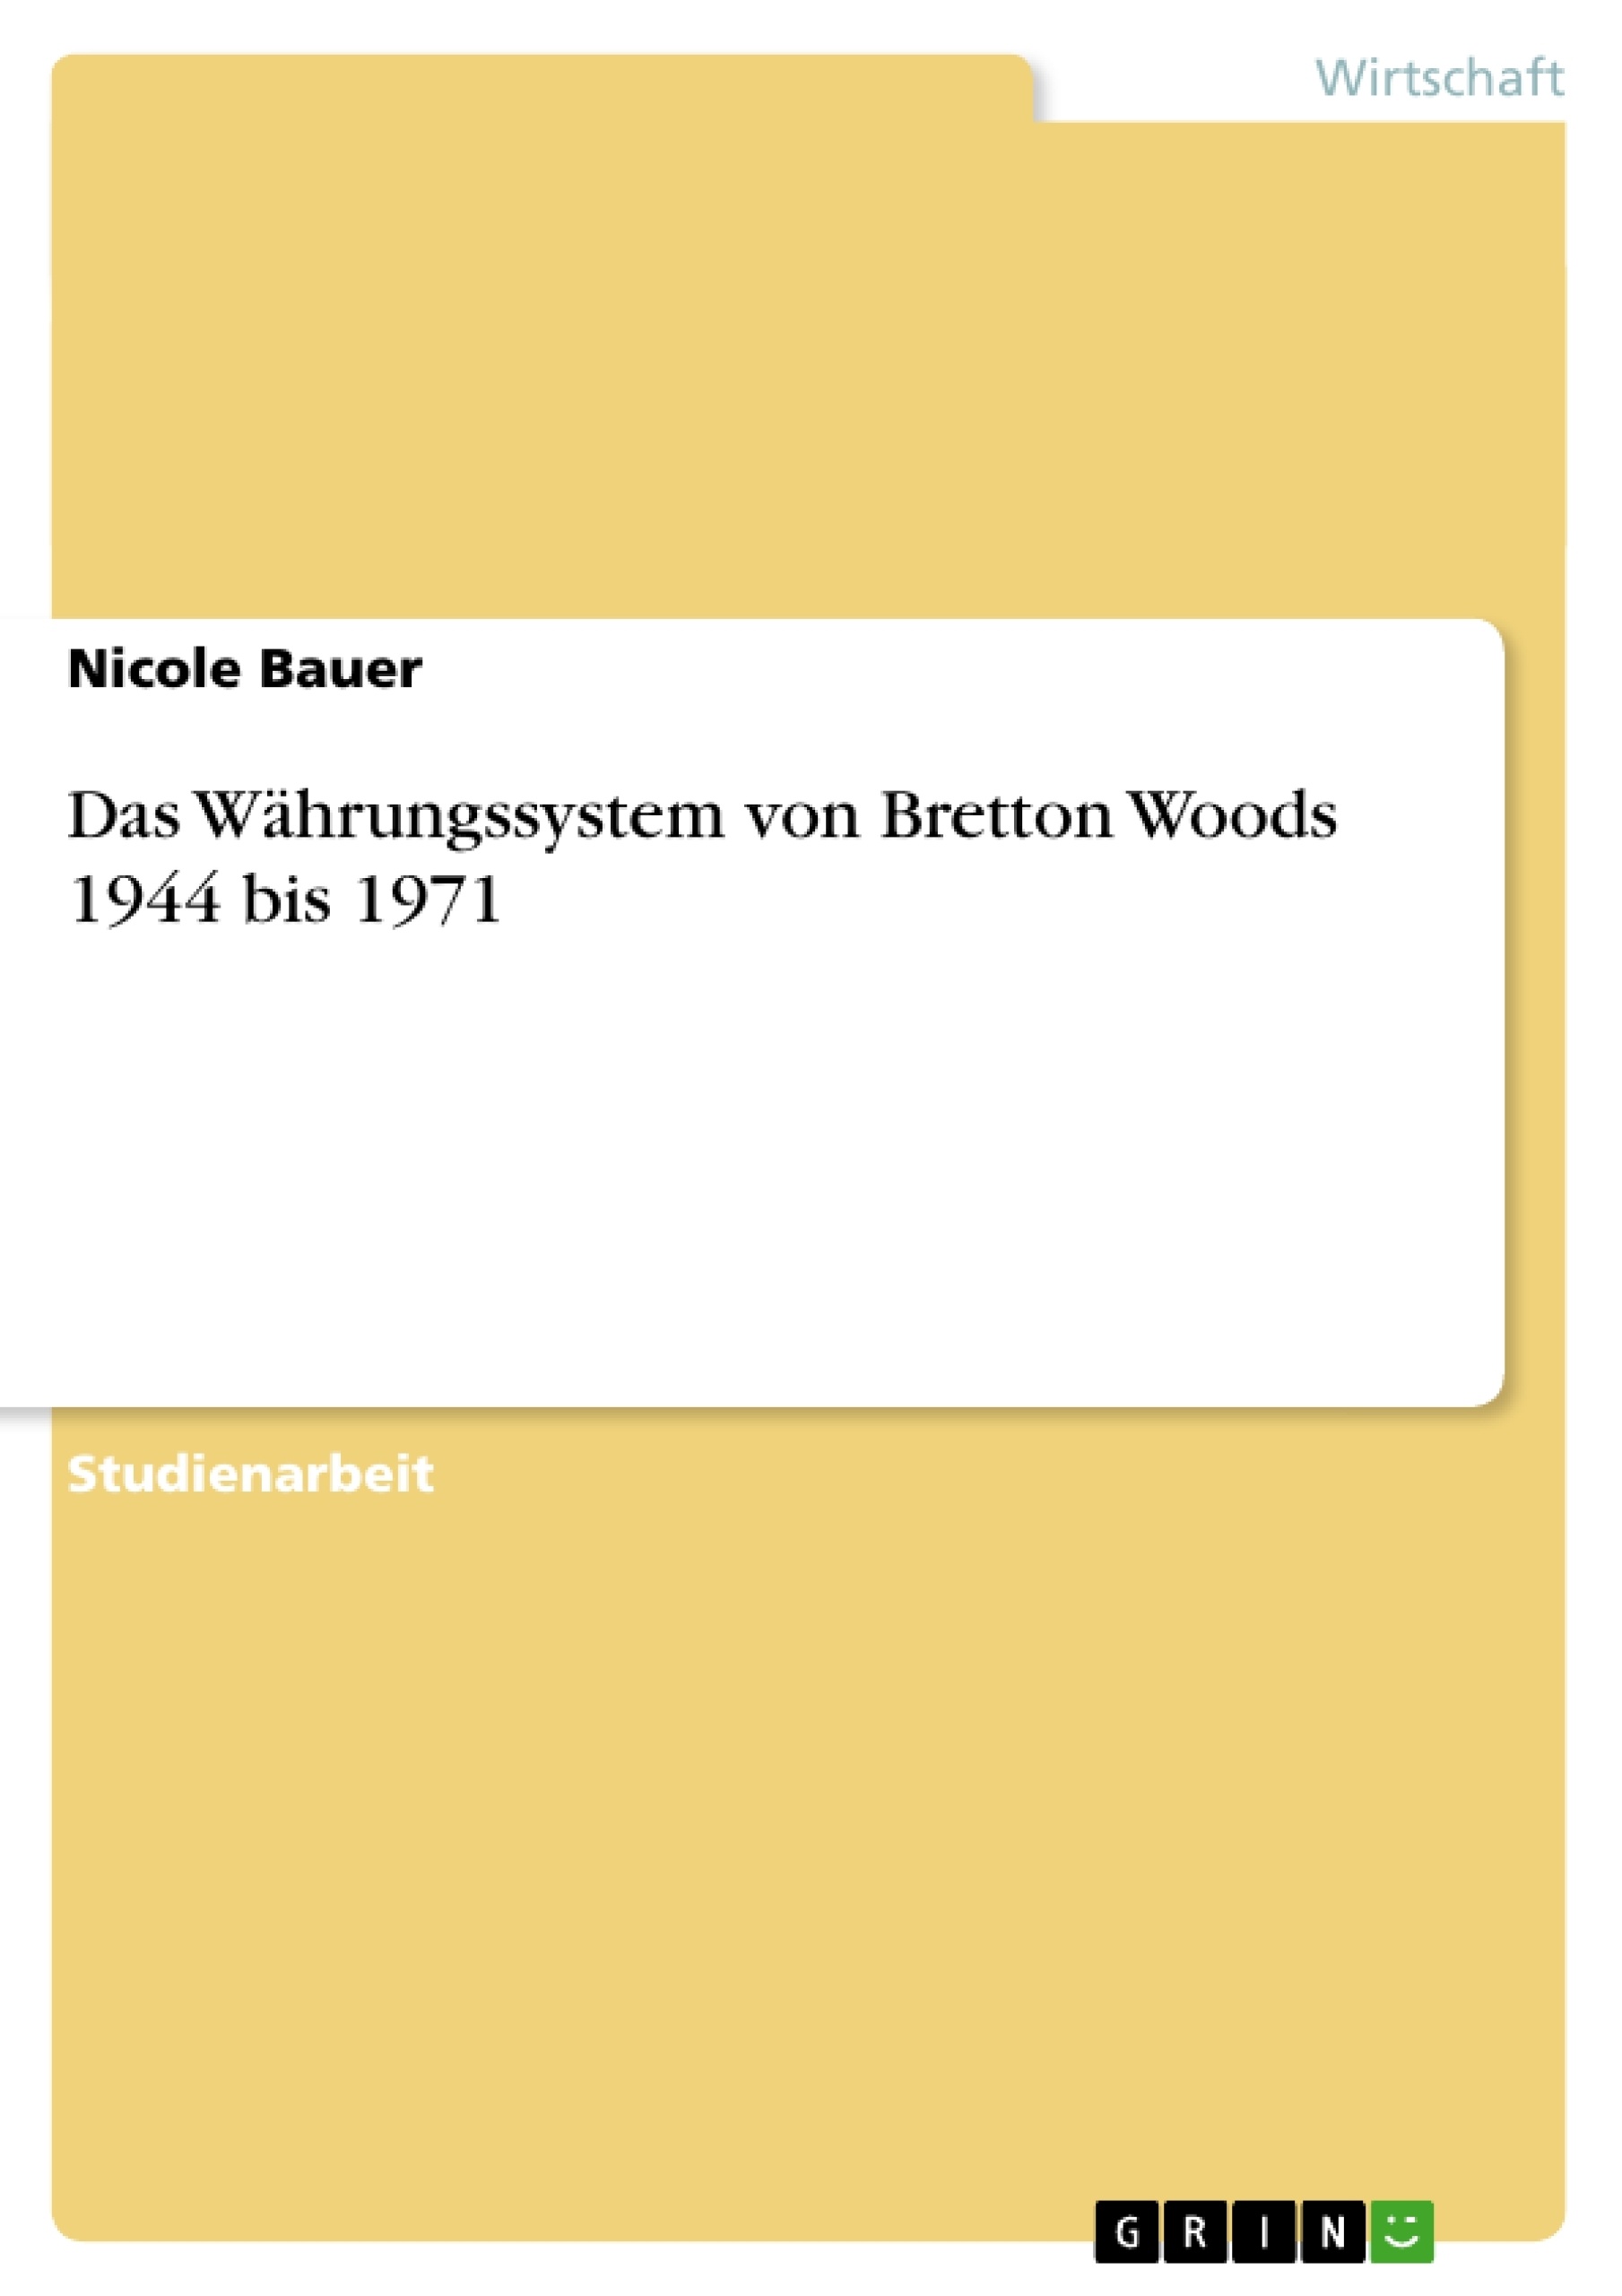 Title: Das Währungssystem von Bretton Woods 1944 bis 1971